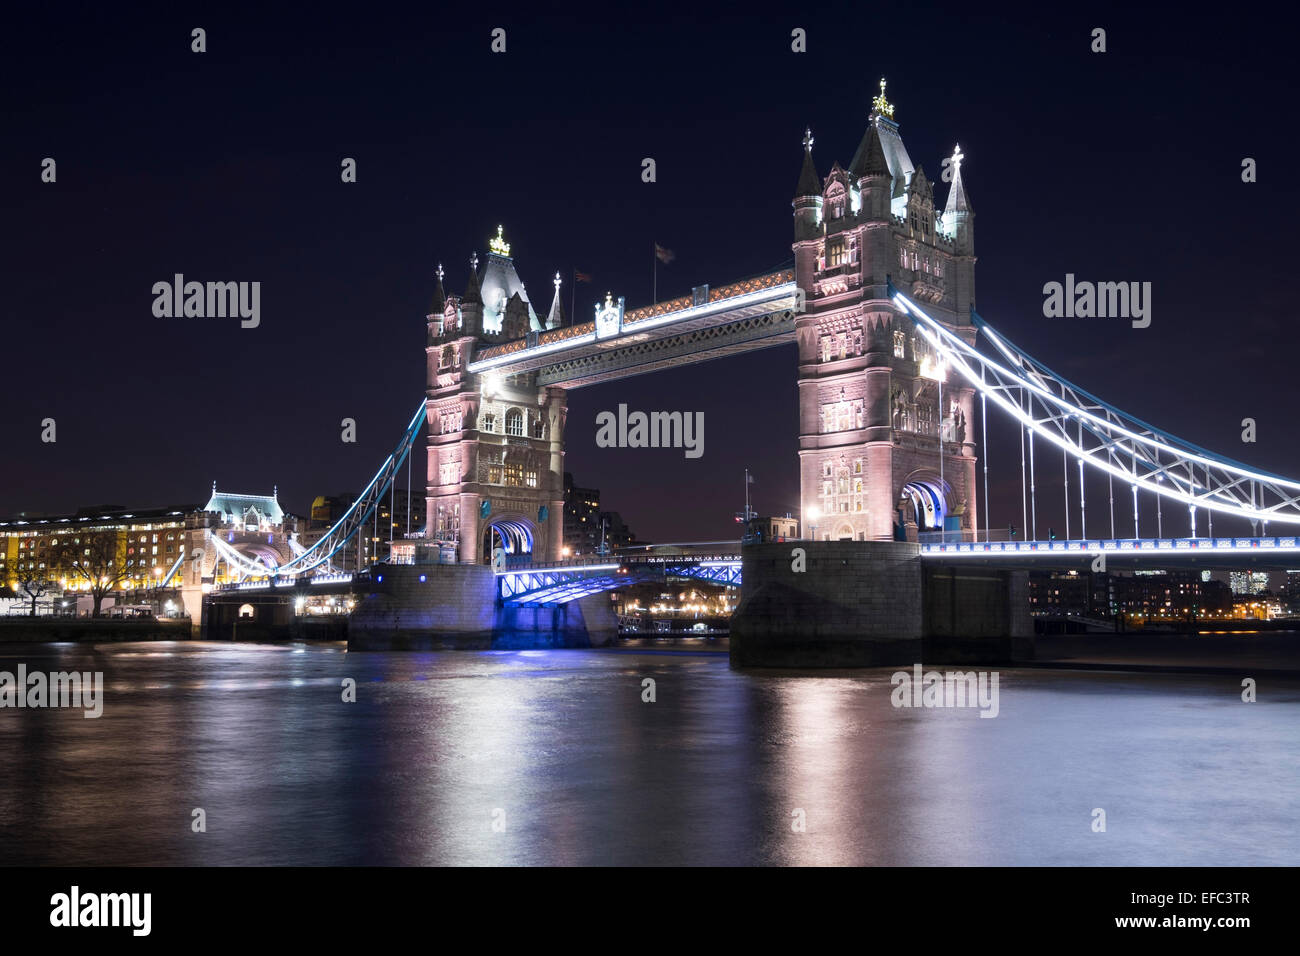 Tower Bridge, traversant la Tamise, le symbole traditionnel de Londres, Angleterre Banque D'Images